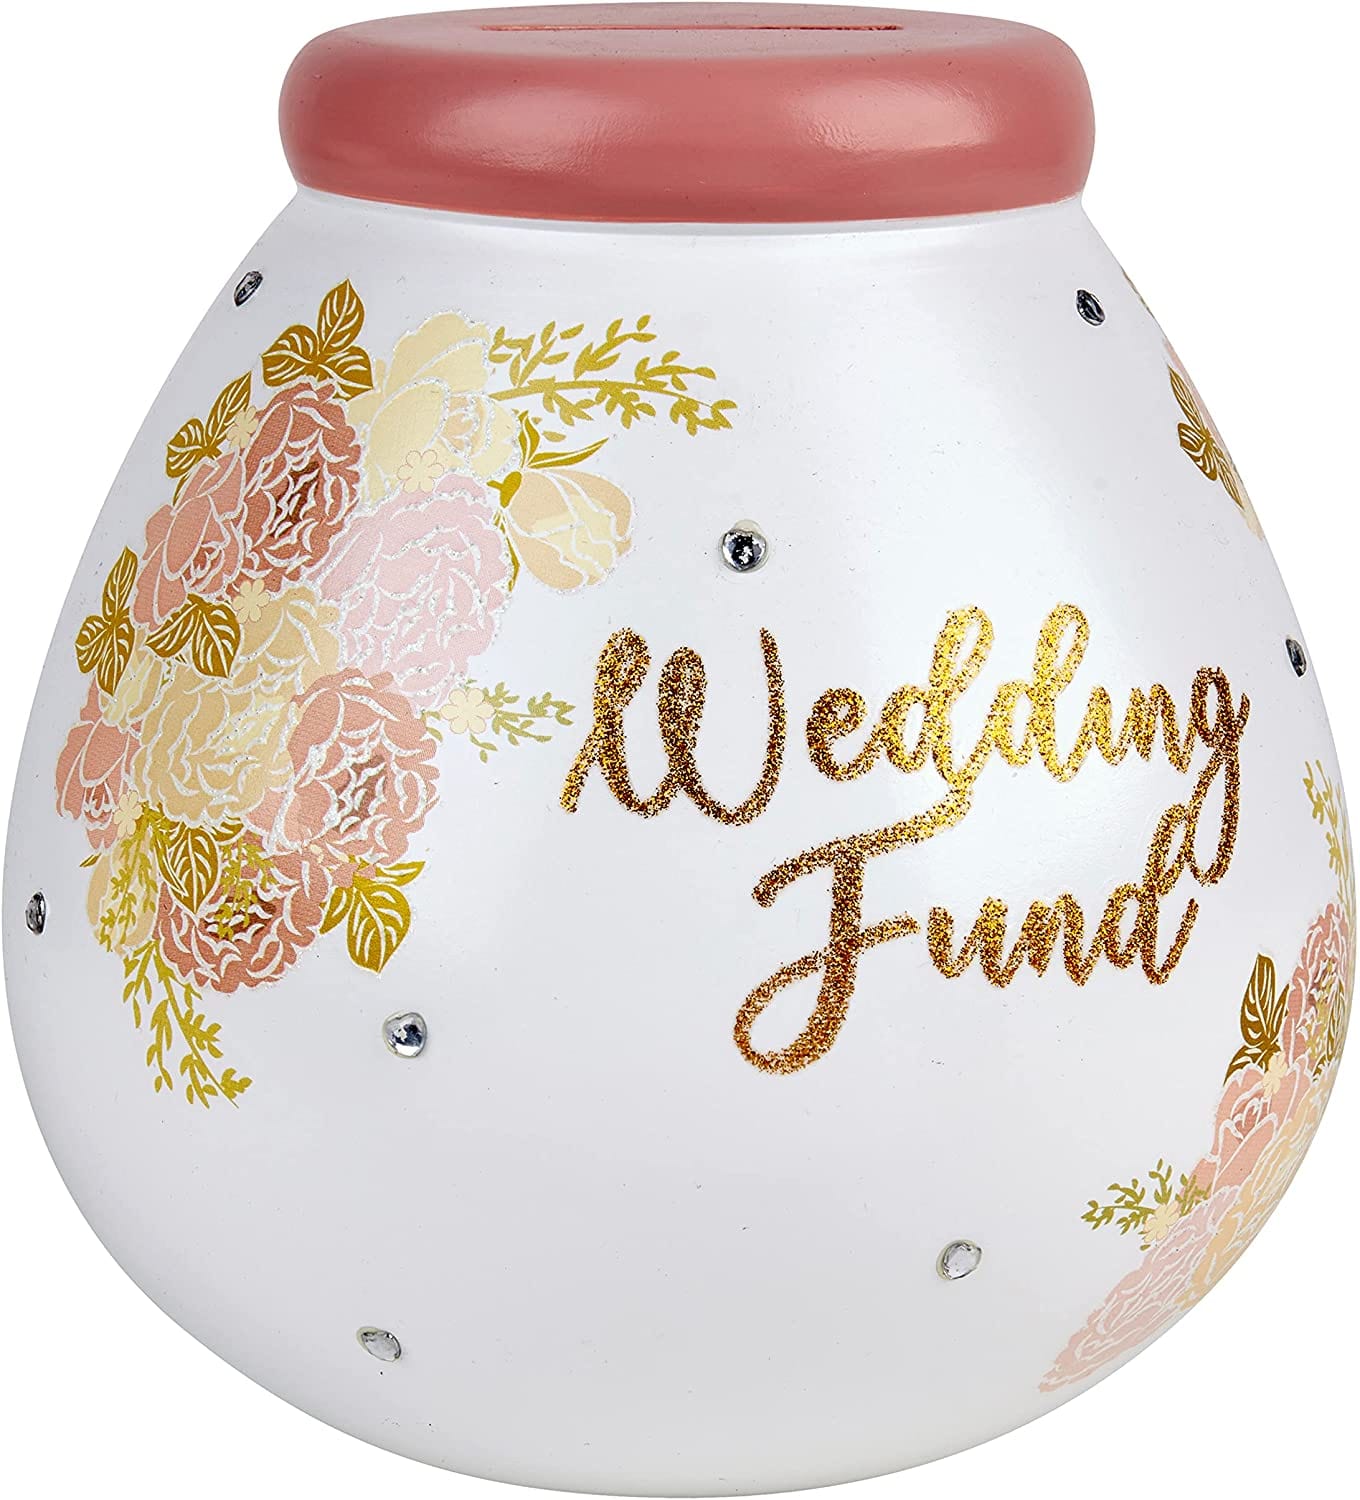 Pot of Dreams Money Box Pot of Dreams - Wedding Fund (Floral)